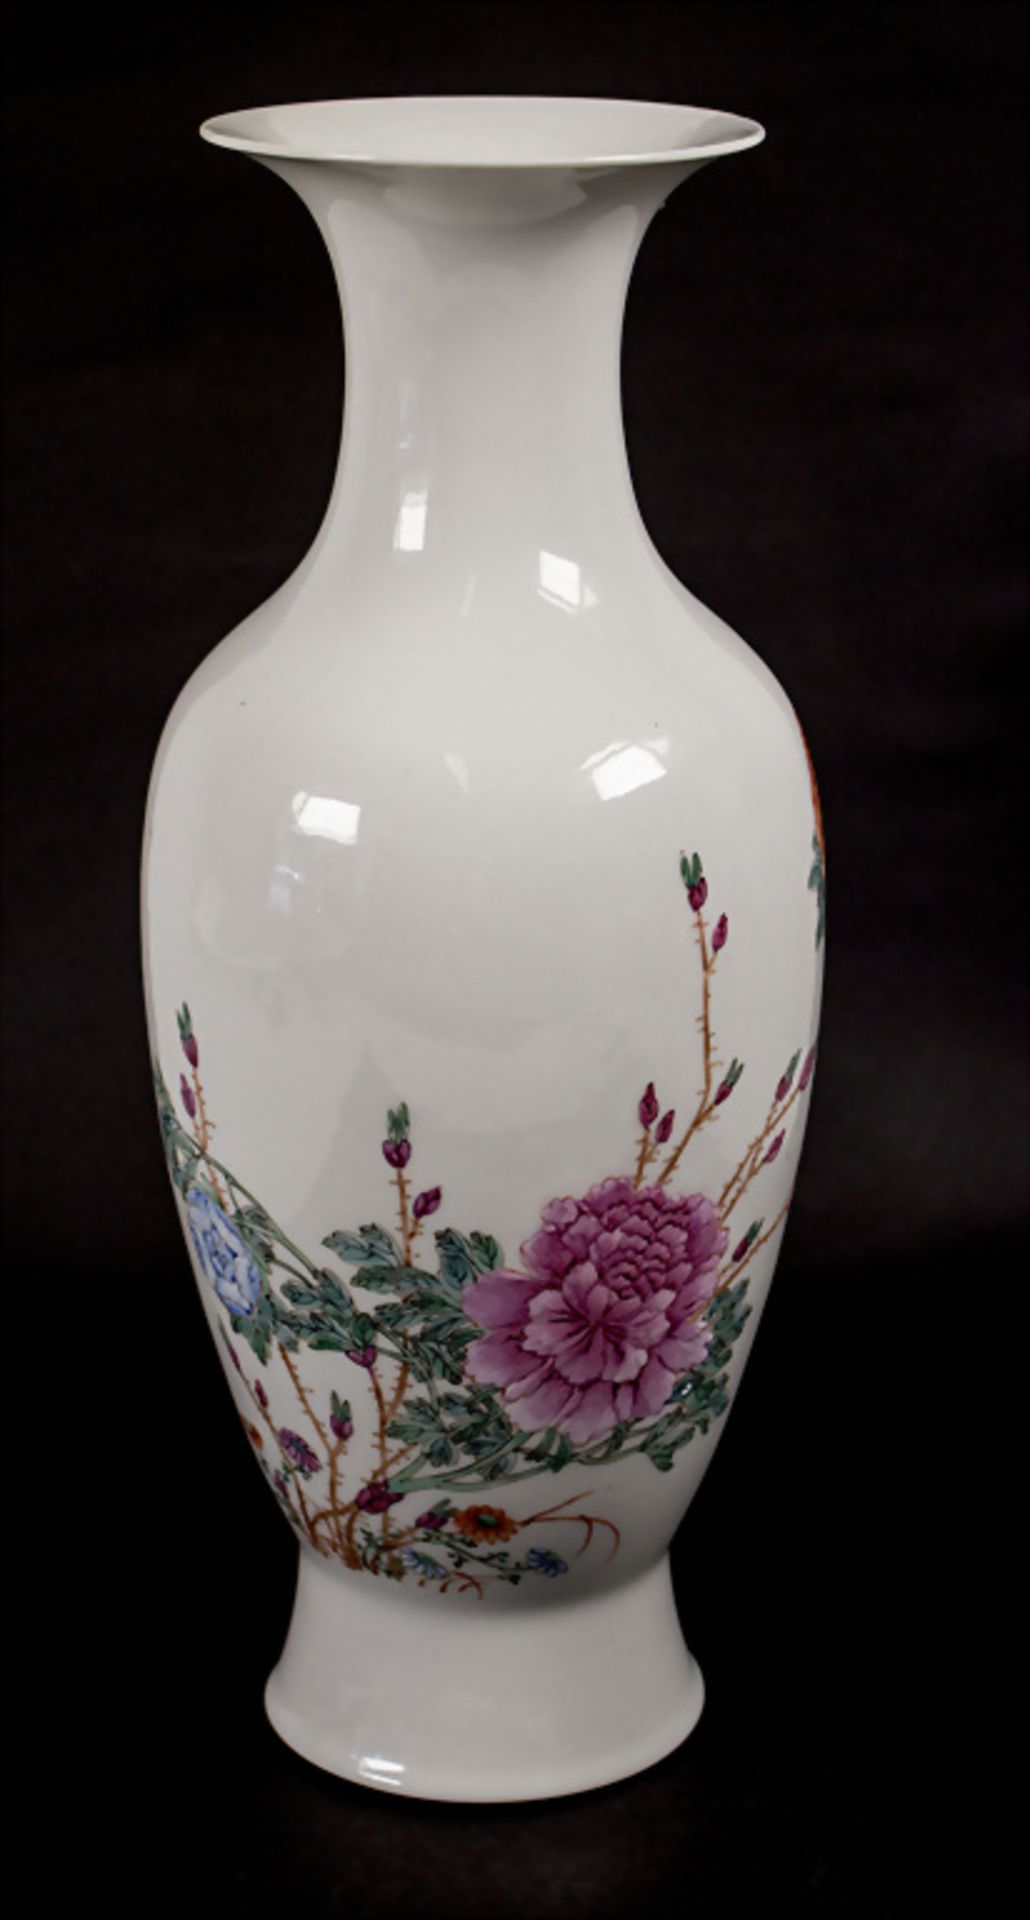 Ziervase / A decorative vase, China, späte Qing Dynastie (1644-1911), wohl um 1900